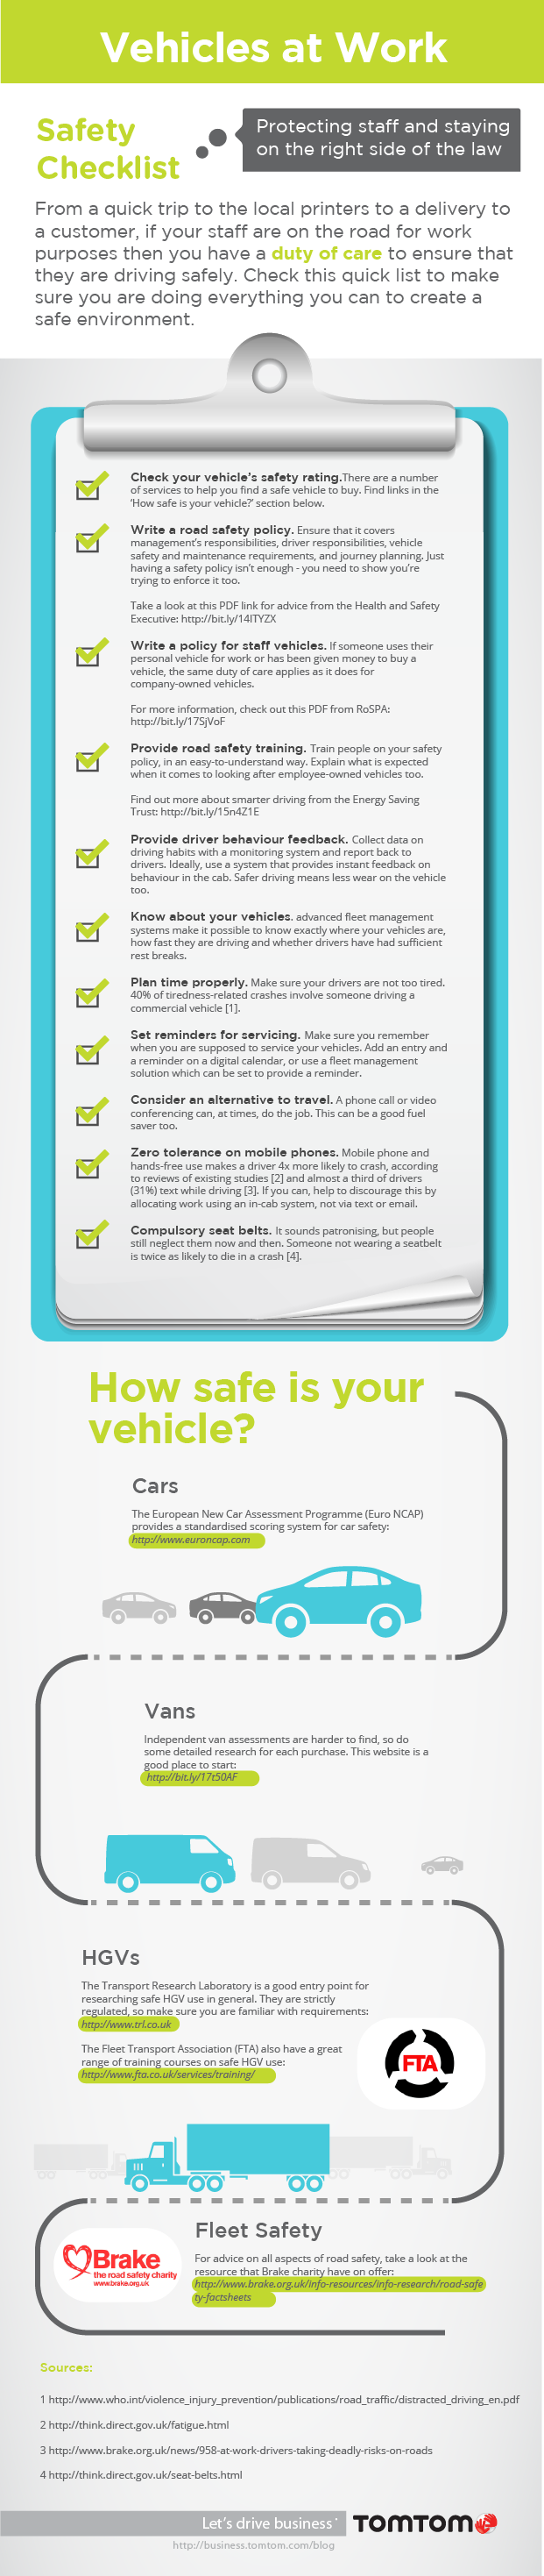 TomTom_Driver_Safety_Checklist